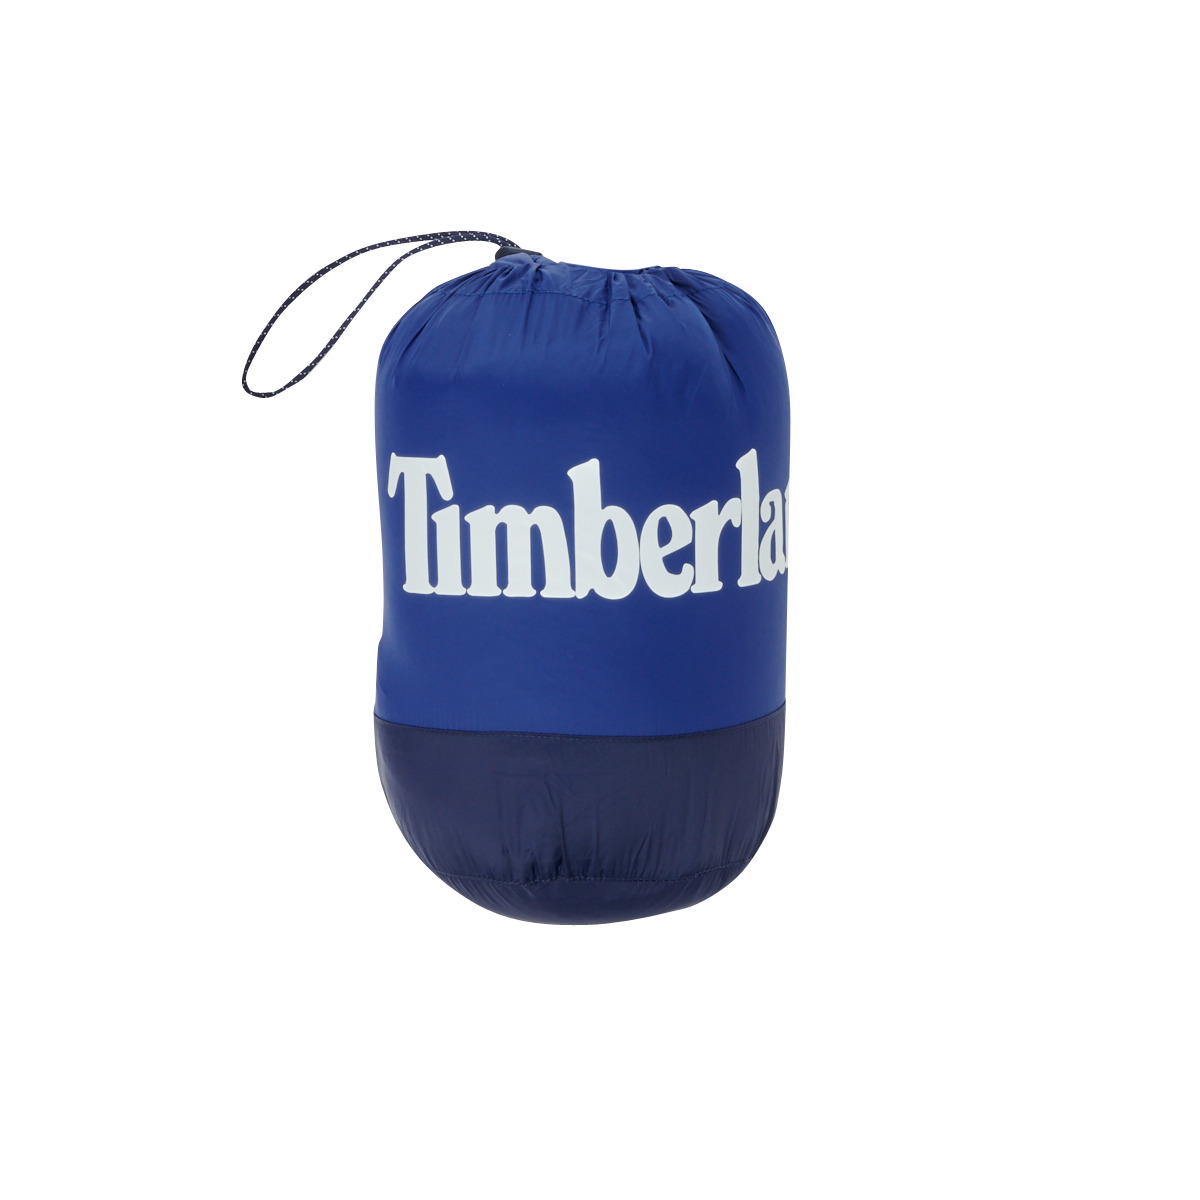 Timberland Bleu T06424-843 Wc5RIvPK